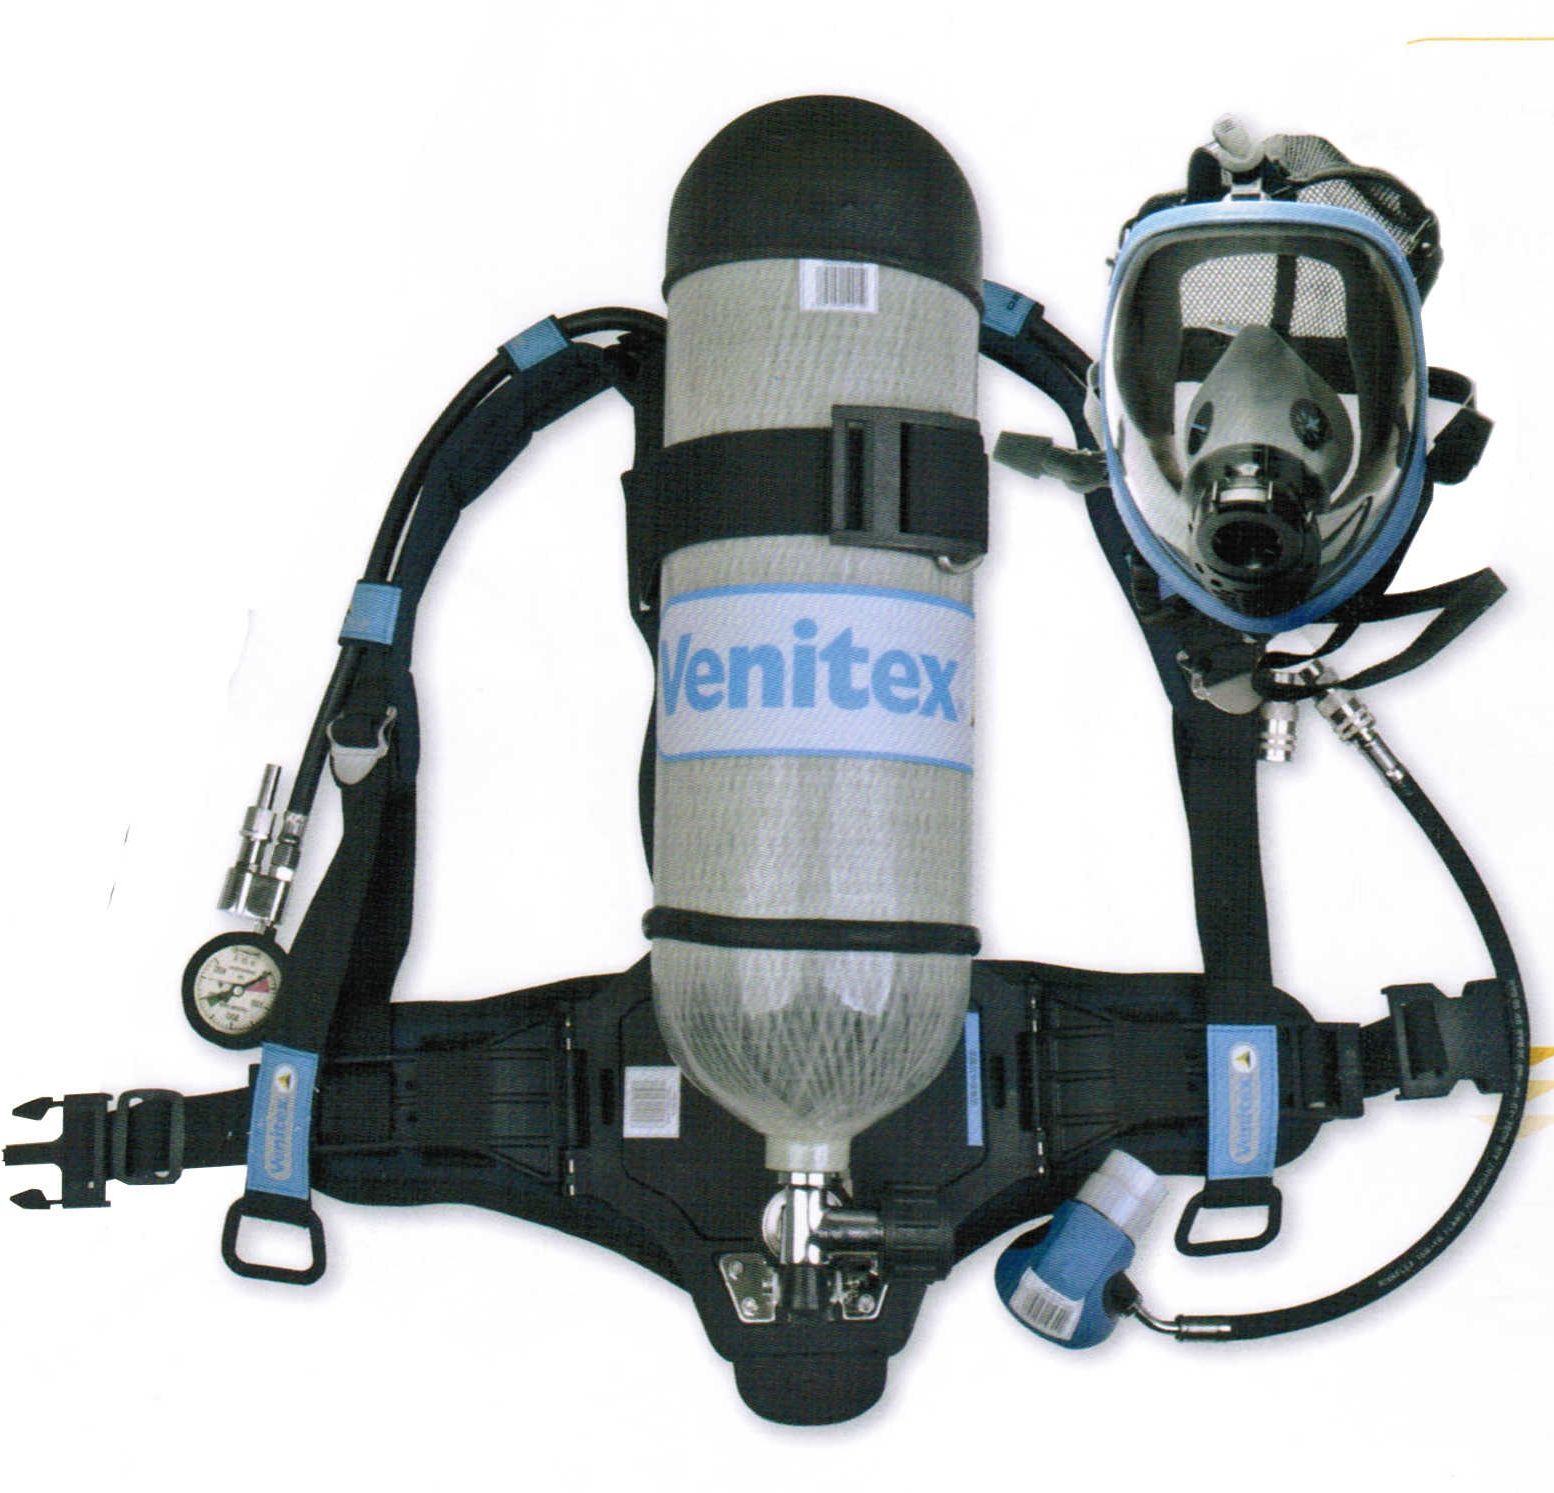 正压式空气呼吸器厂家直销 正压式空气呼吸器批发商/供应商价格图片